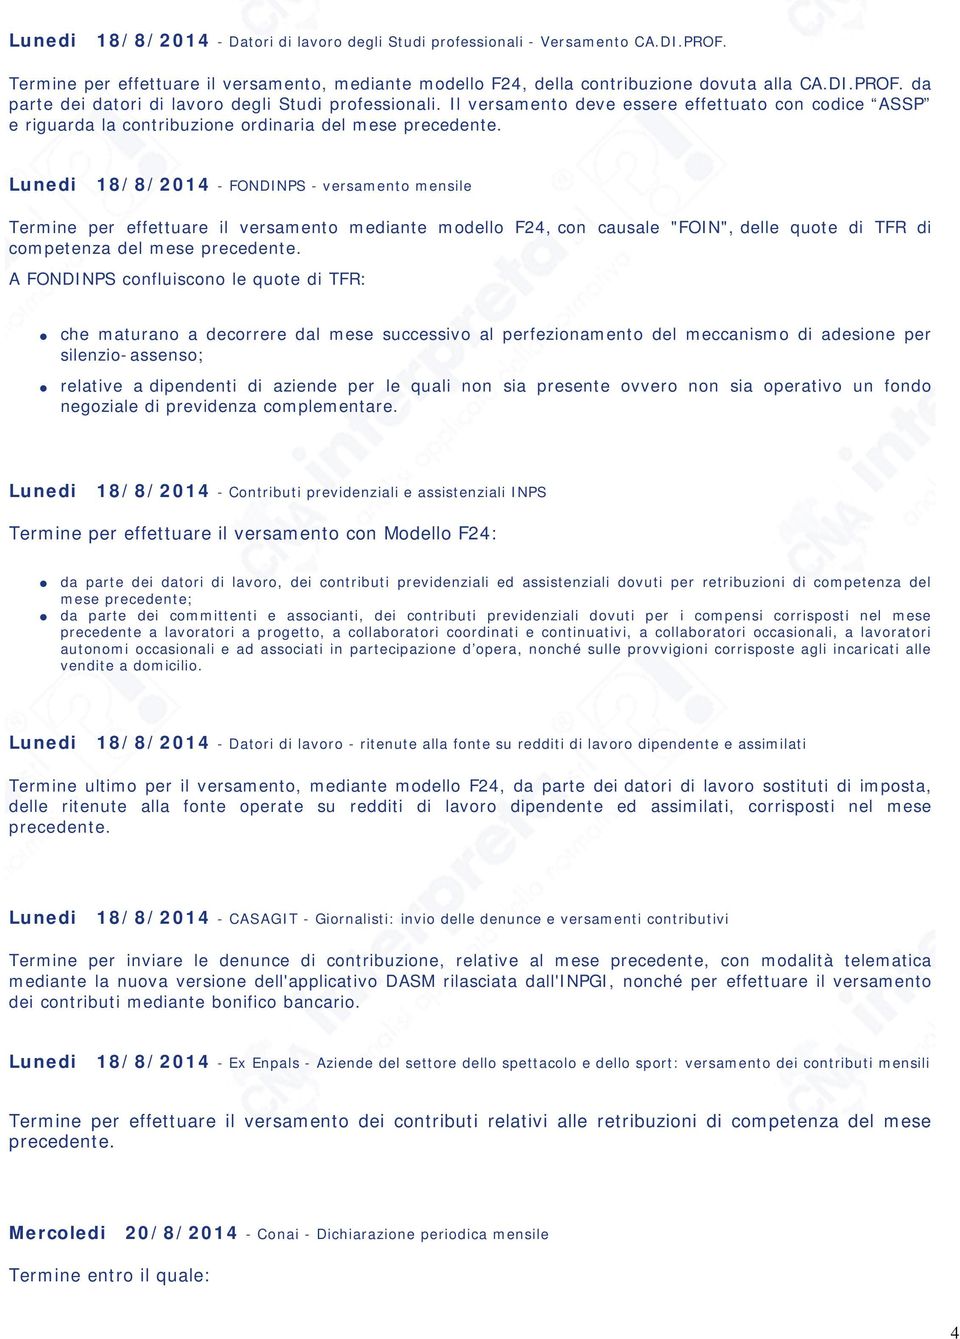 Lunedi 18/8/2014 - FONDINPS - versamento mensile Termine per effettuare il versamento mediante modello F24, con causale "FOIN", delle quote di TFR di competenza del mese precedente.